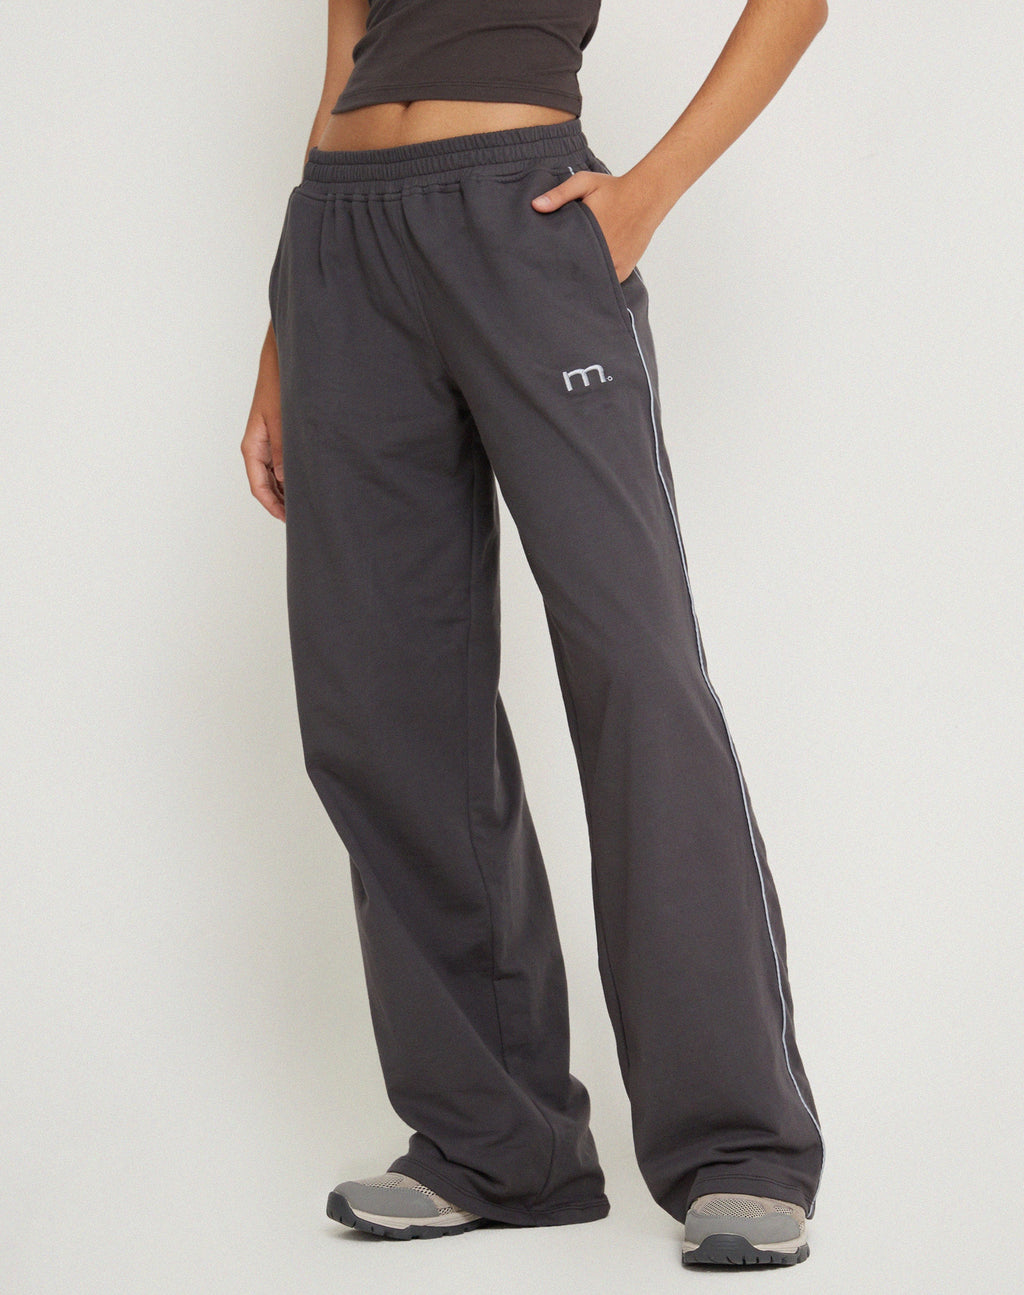 Pantalon de jogging à jambe large Benton, coloris gris béluga